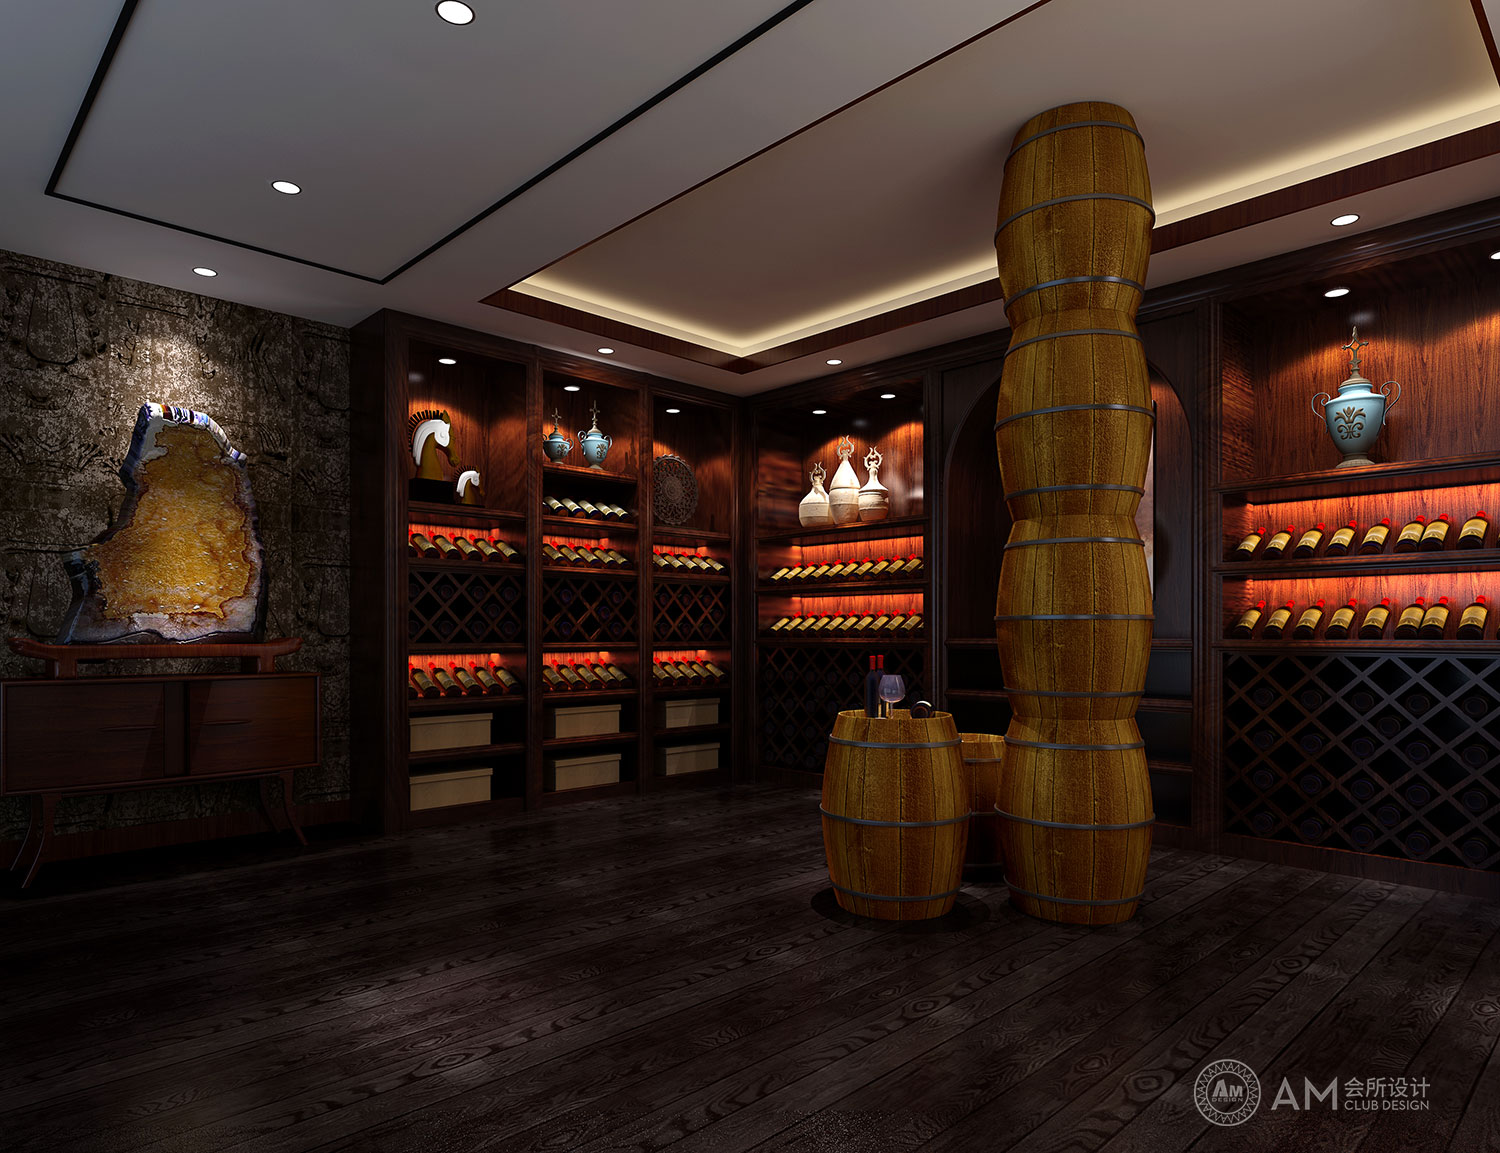 AM DESIGN | Design of liquor store of qilinhui Top Spa Club